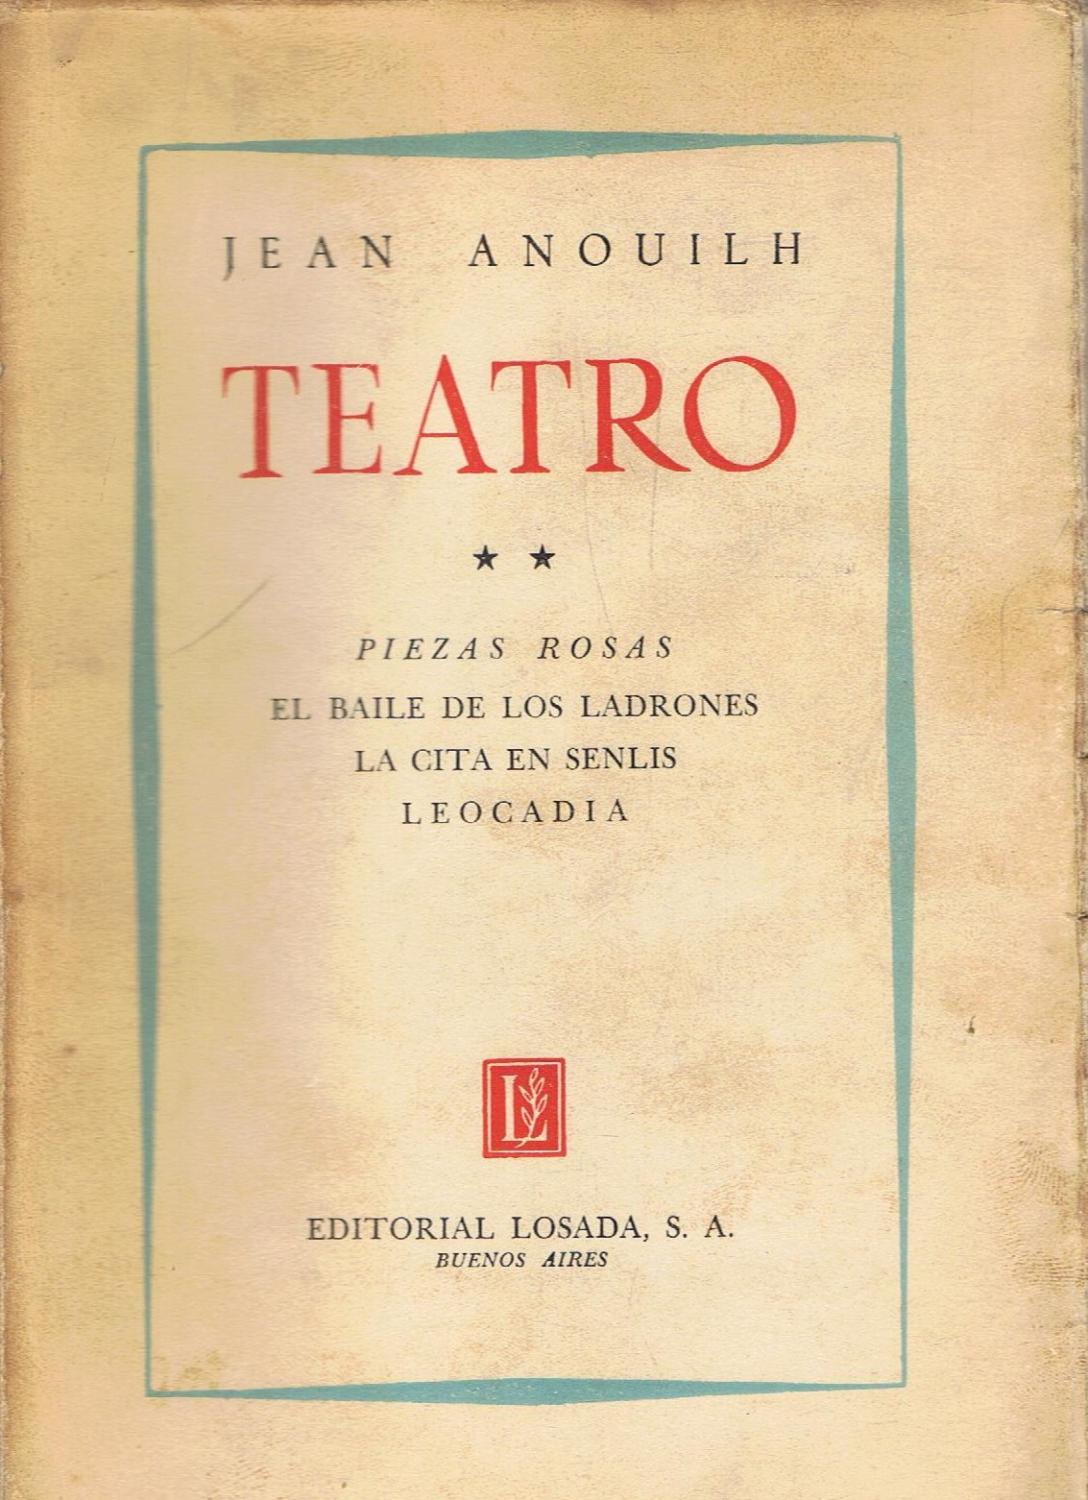 Teatro II. PIEZAS ROSAS * EL BAILE DE LOS LADRONES * LA CITA EN SENLIS *  LEOCADIA by Anouilh. Jean